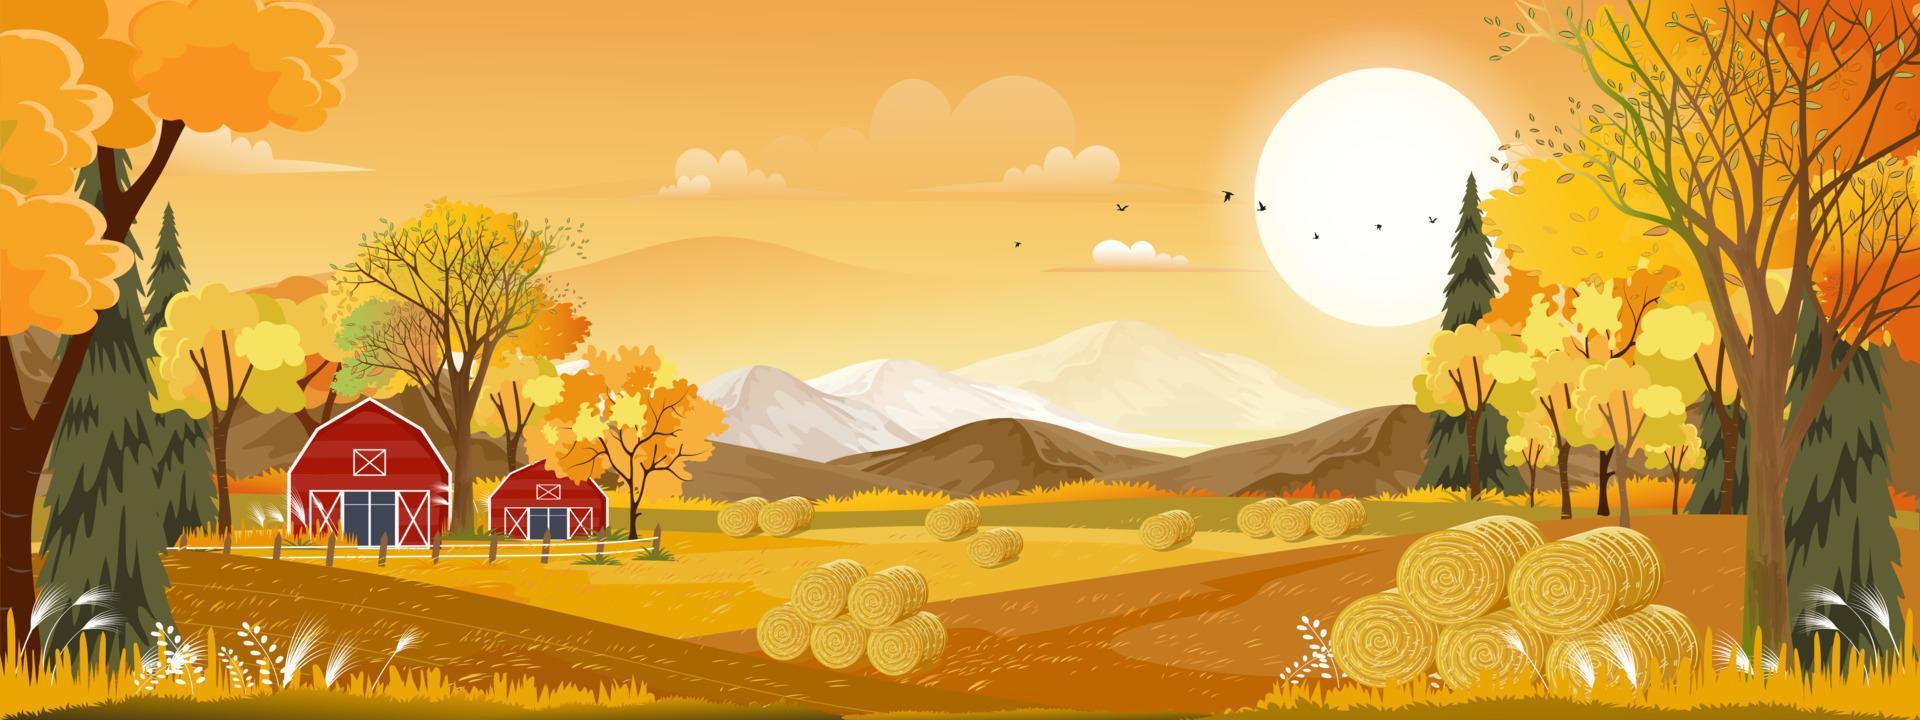 Vektorherbstpanoramalandschaftsbauernhoffeld mit orangefarbenem Himmel, schöner Sonnenuntergang im Herbstlandschaftspanoramablick mit gelbem Laub, Herbstsaison mit Kopienraum für Fahnenhintergrund vektor